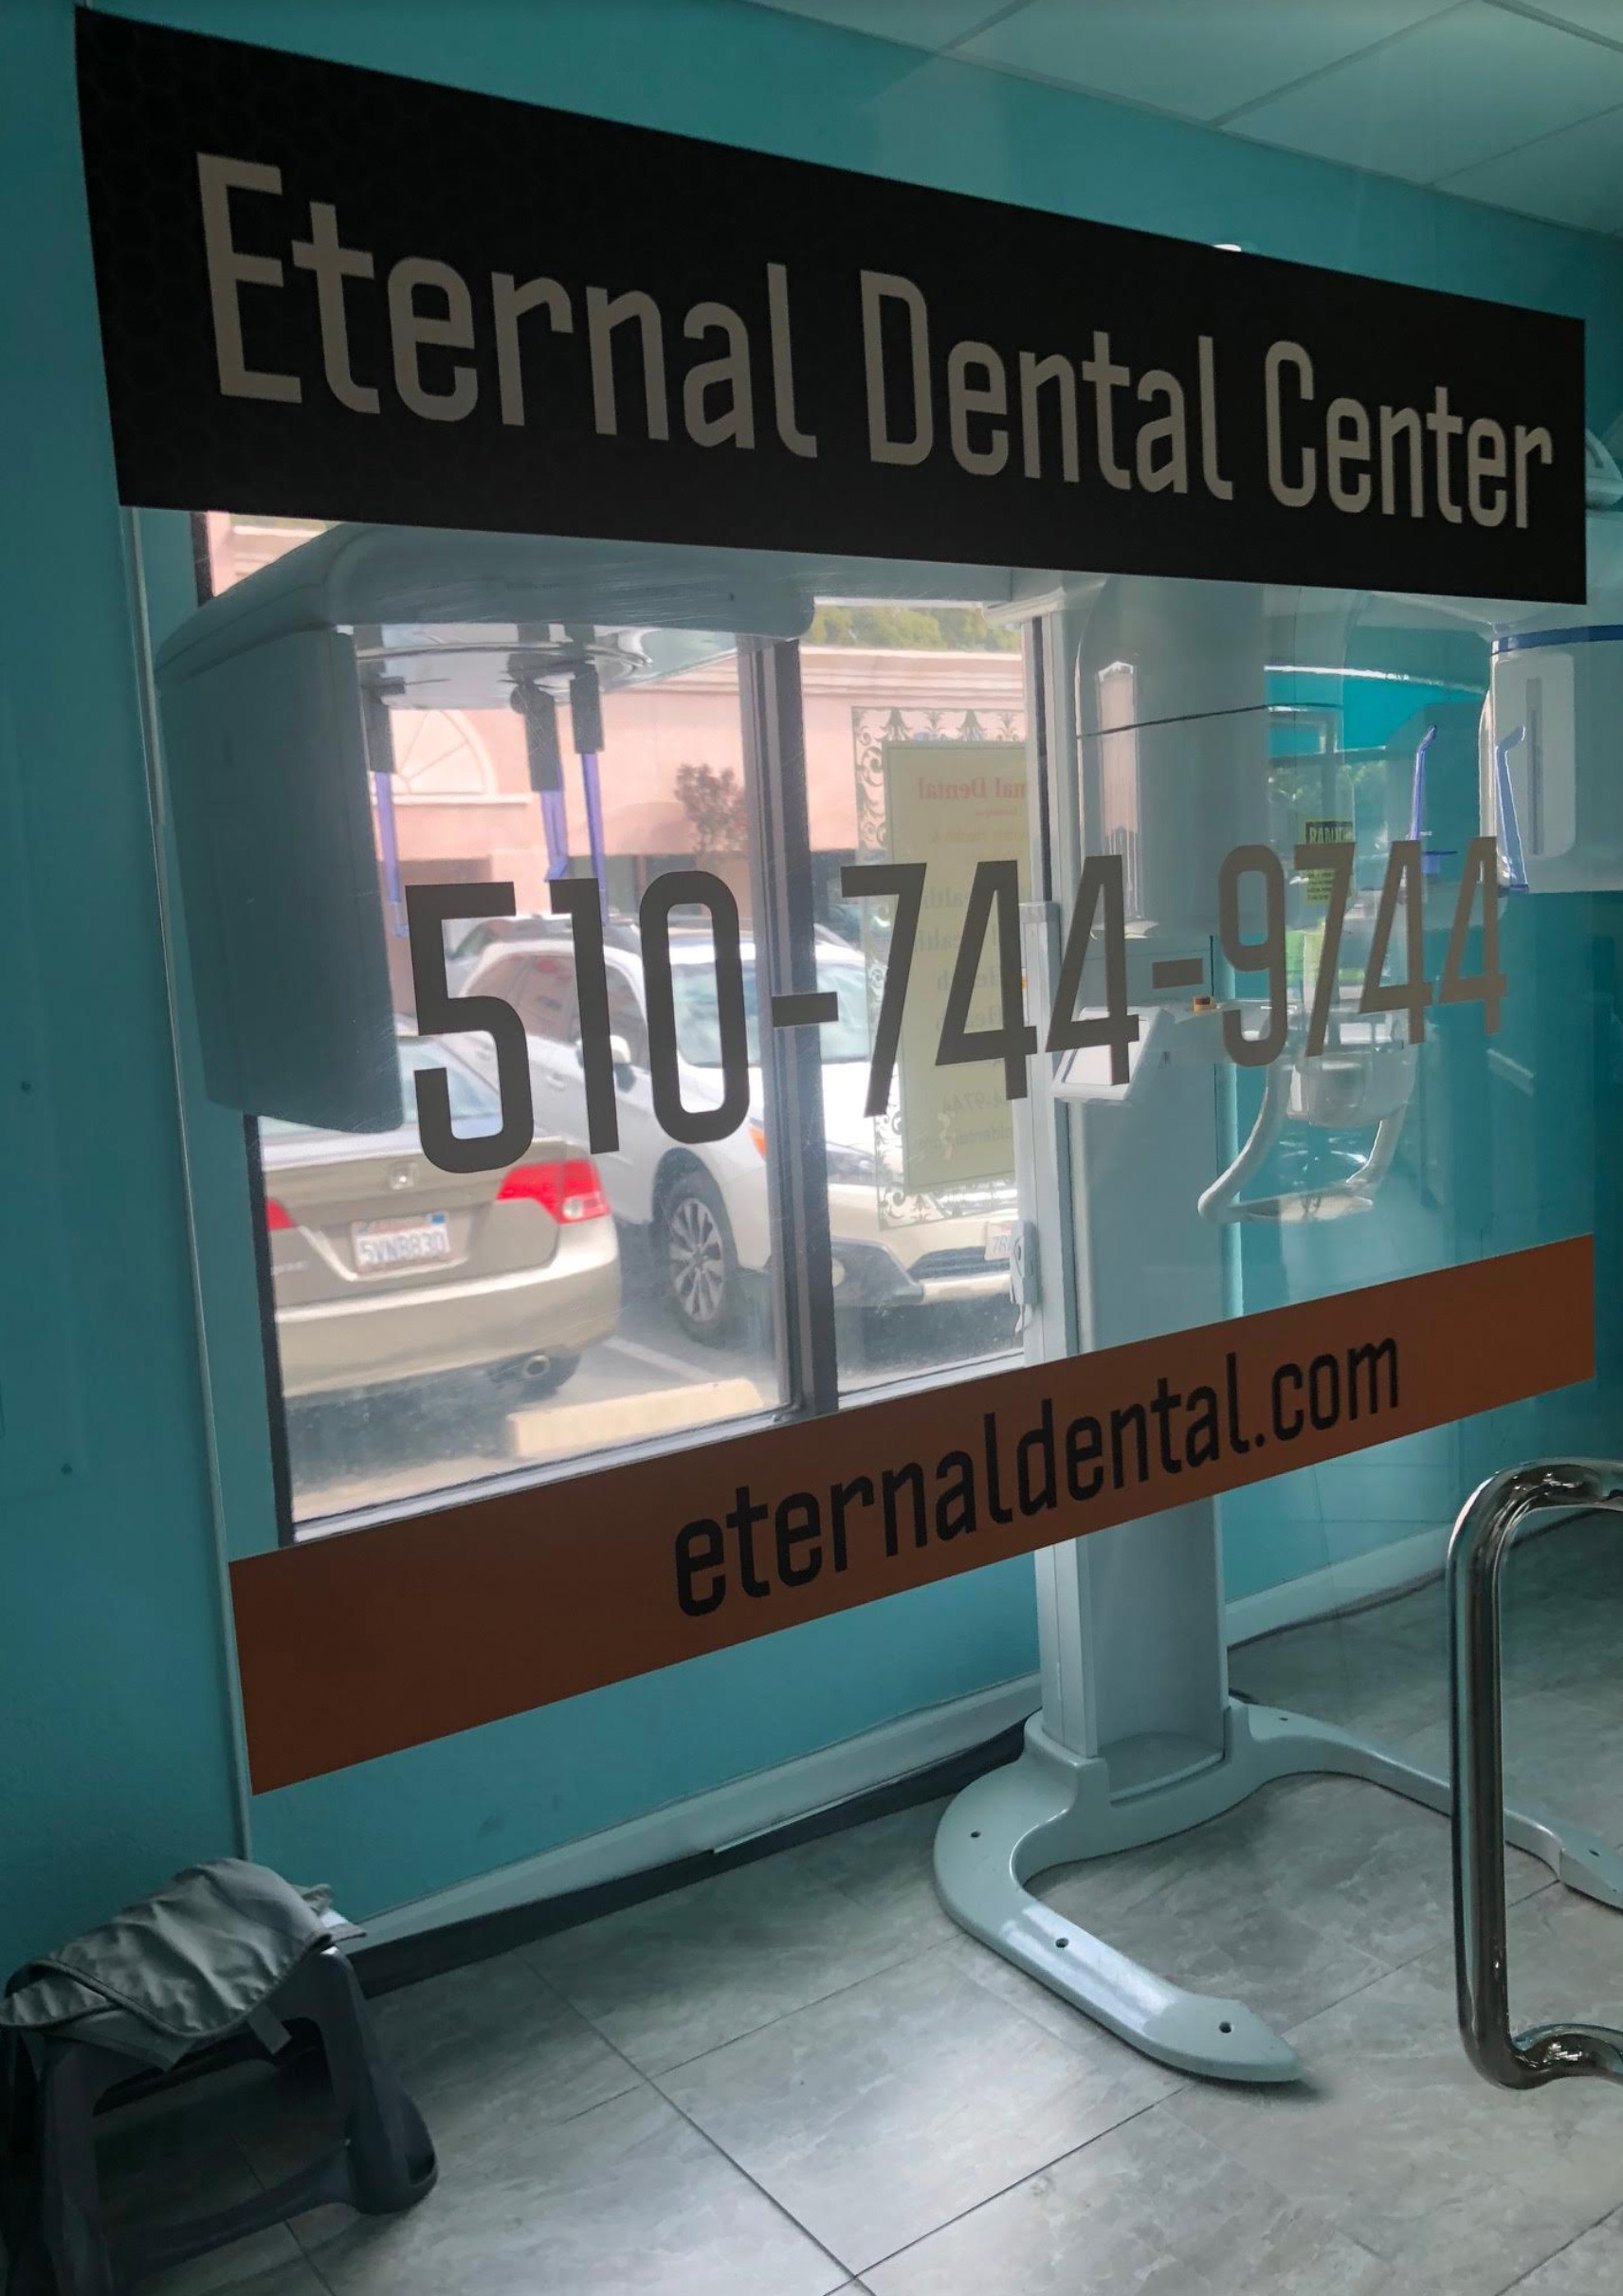 Dentist in Newark, CA 94560